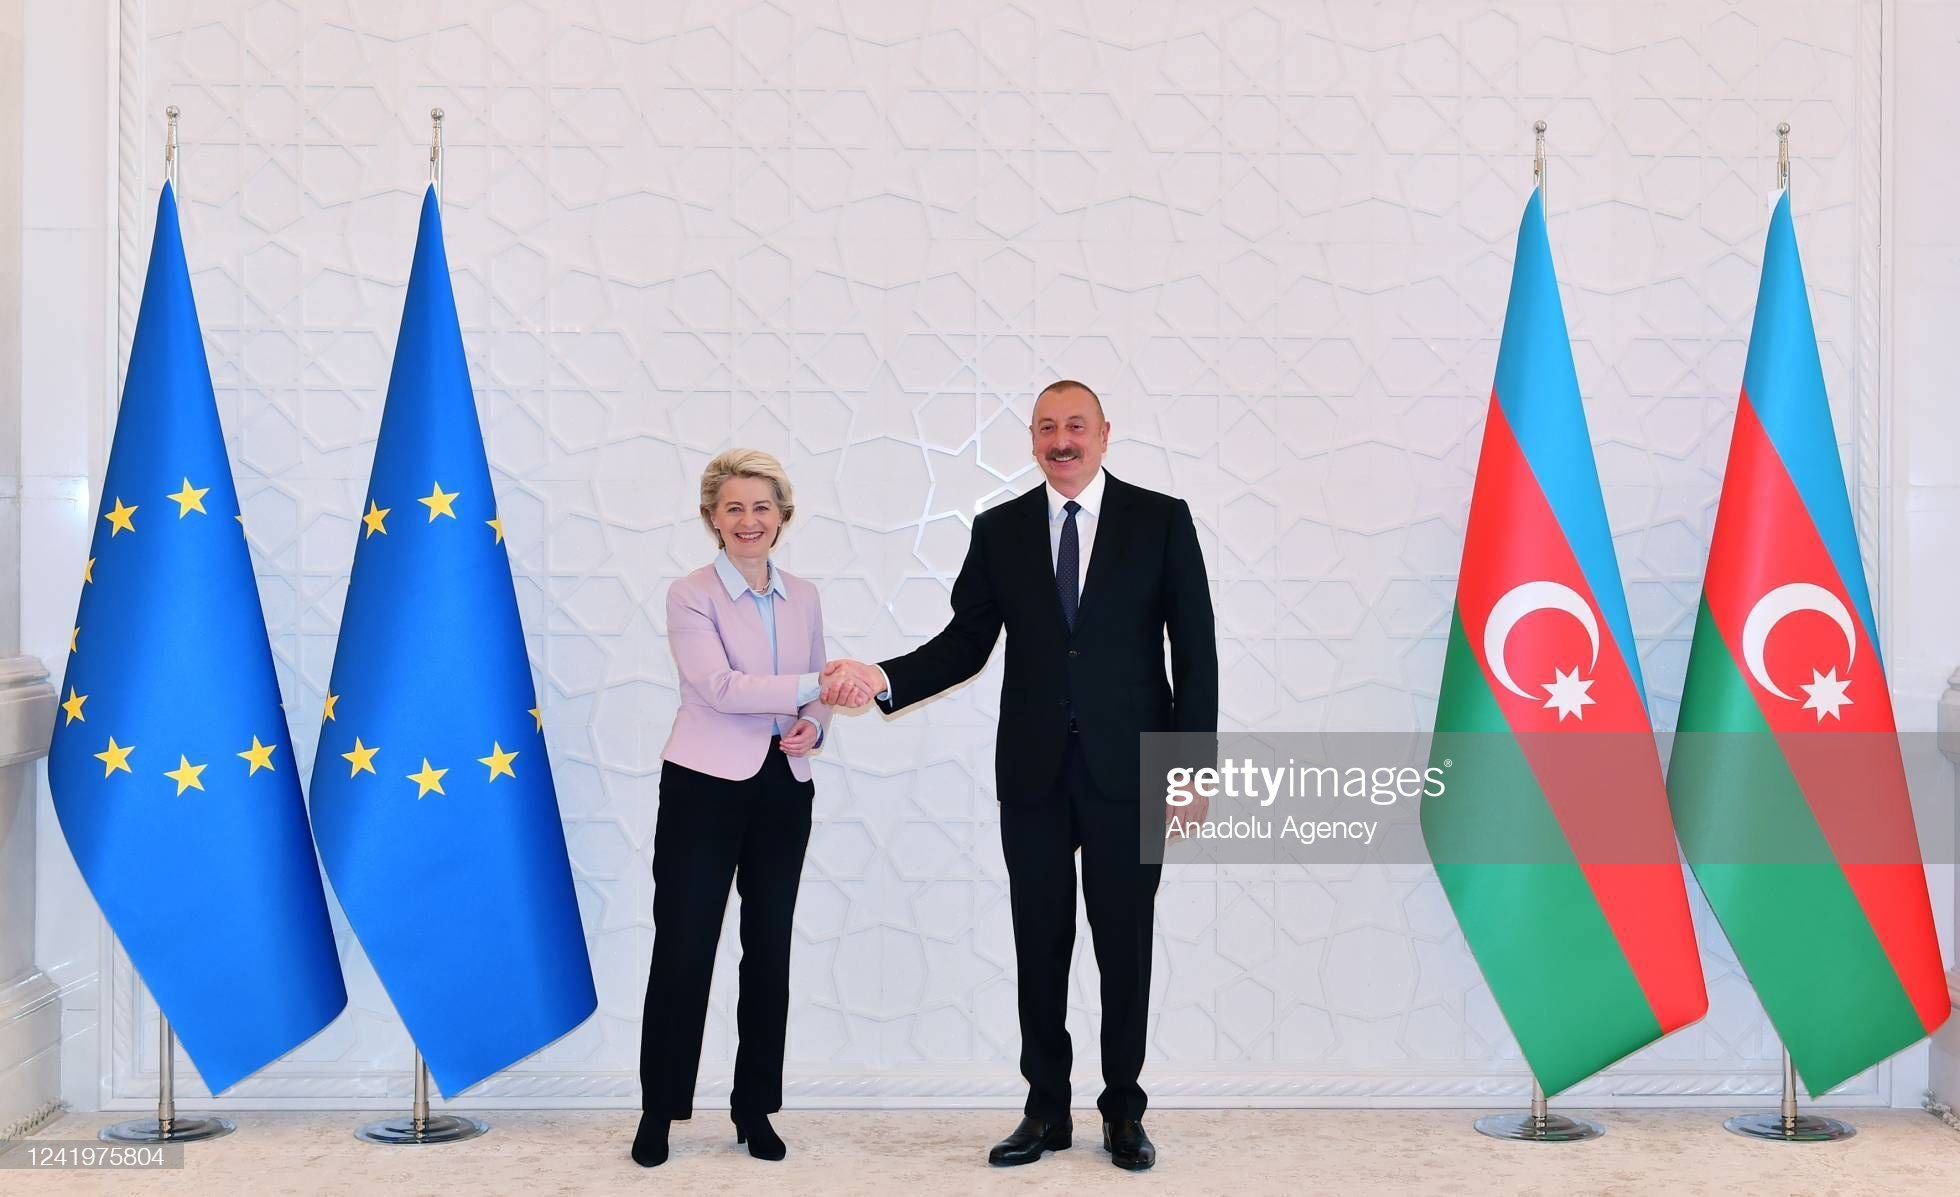 Ադրբեջանը չի կարող այլընտրանք լինել Ռուսաստանին Եվրոպայի գազային շուկայում